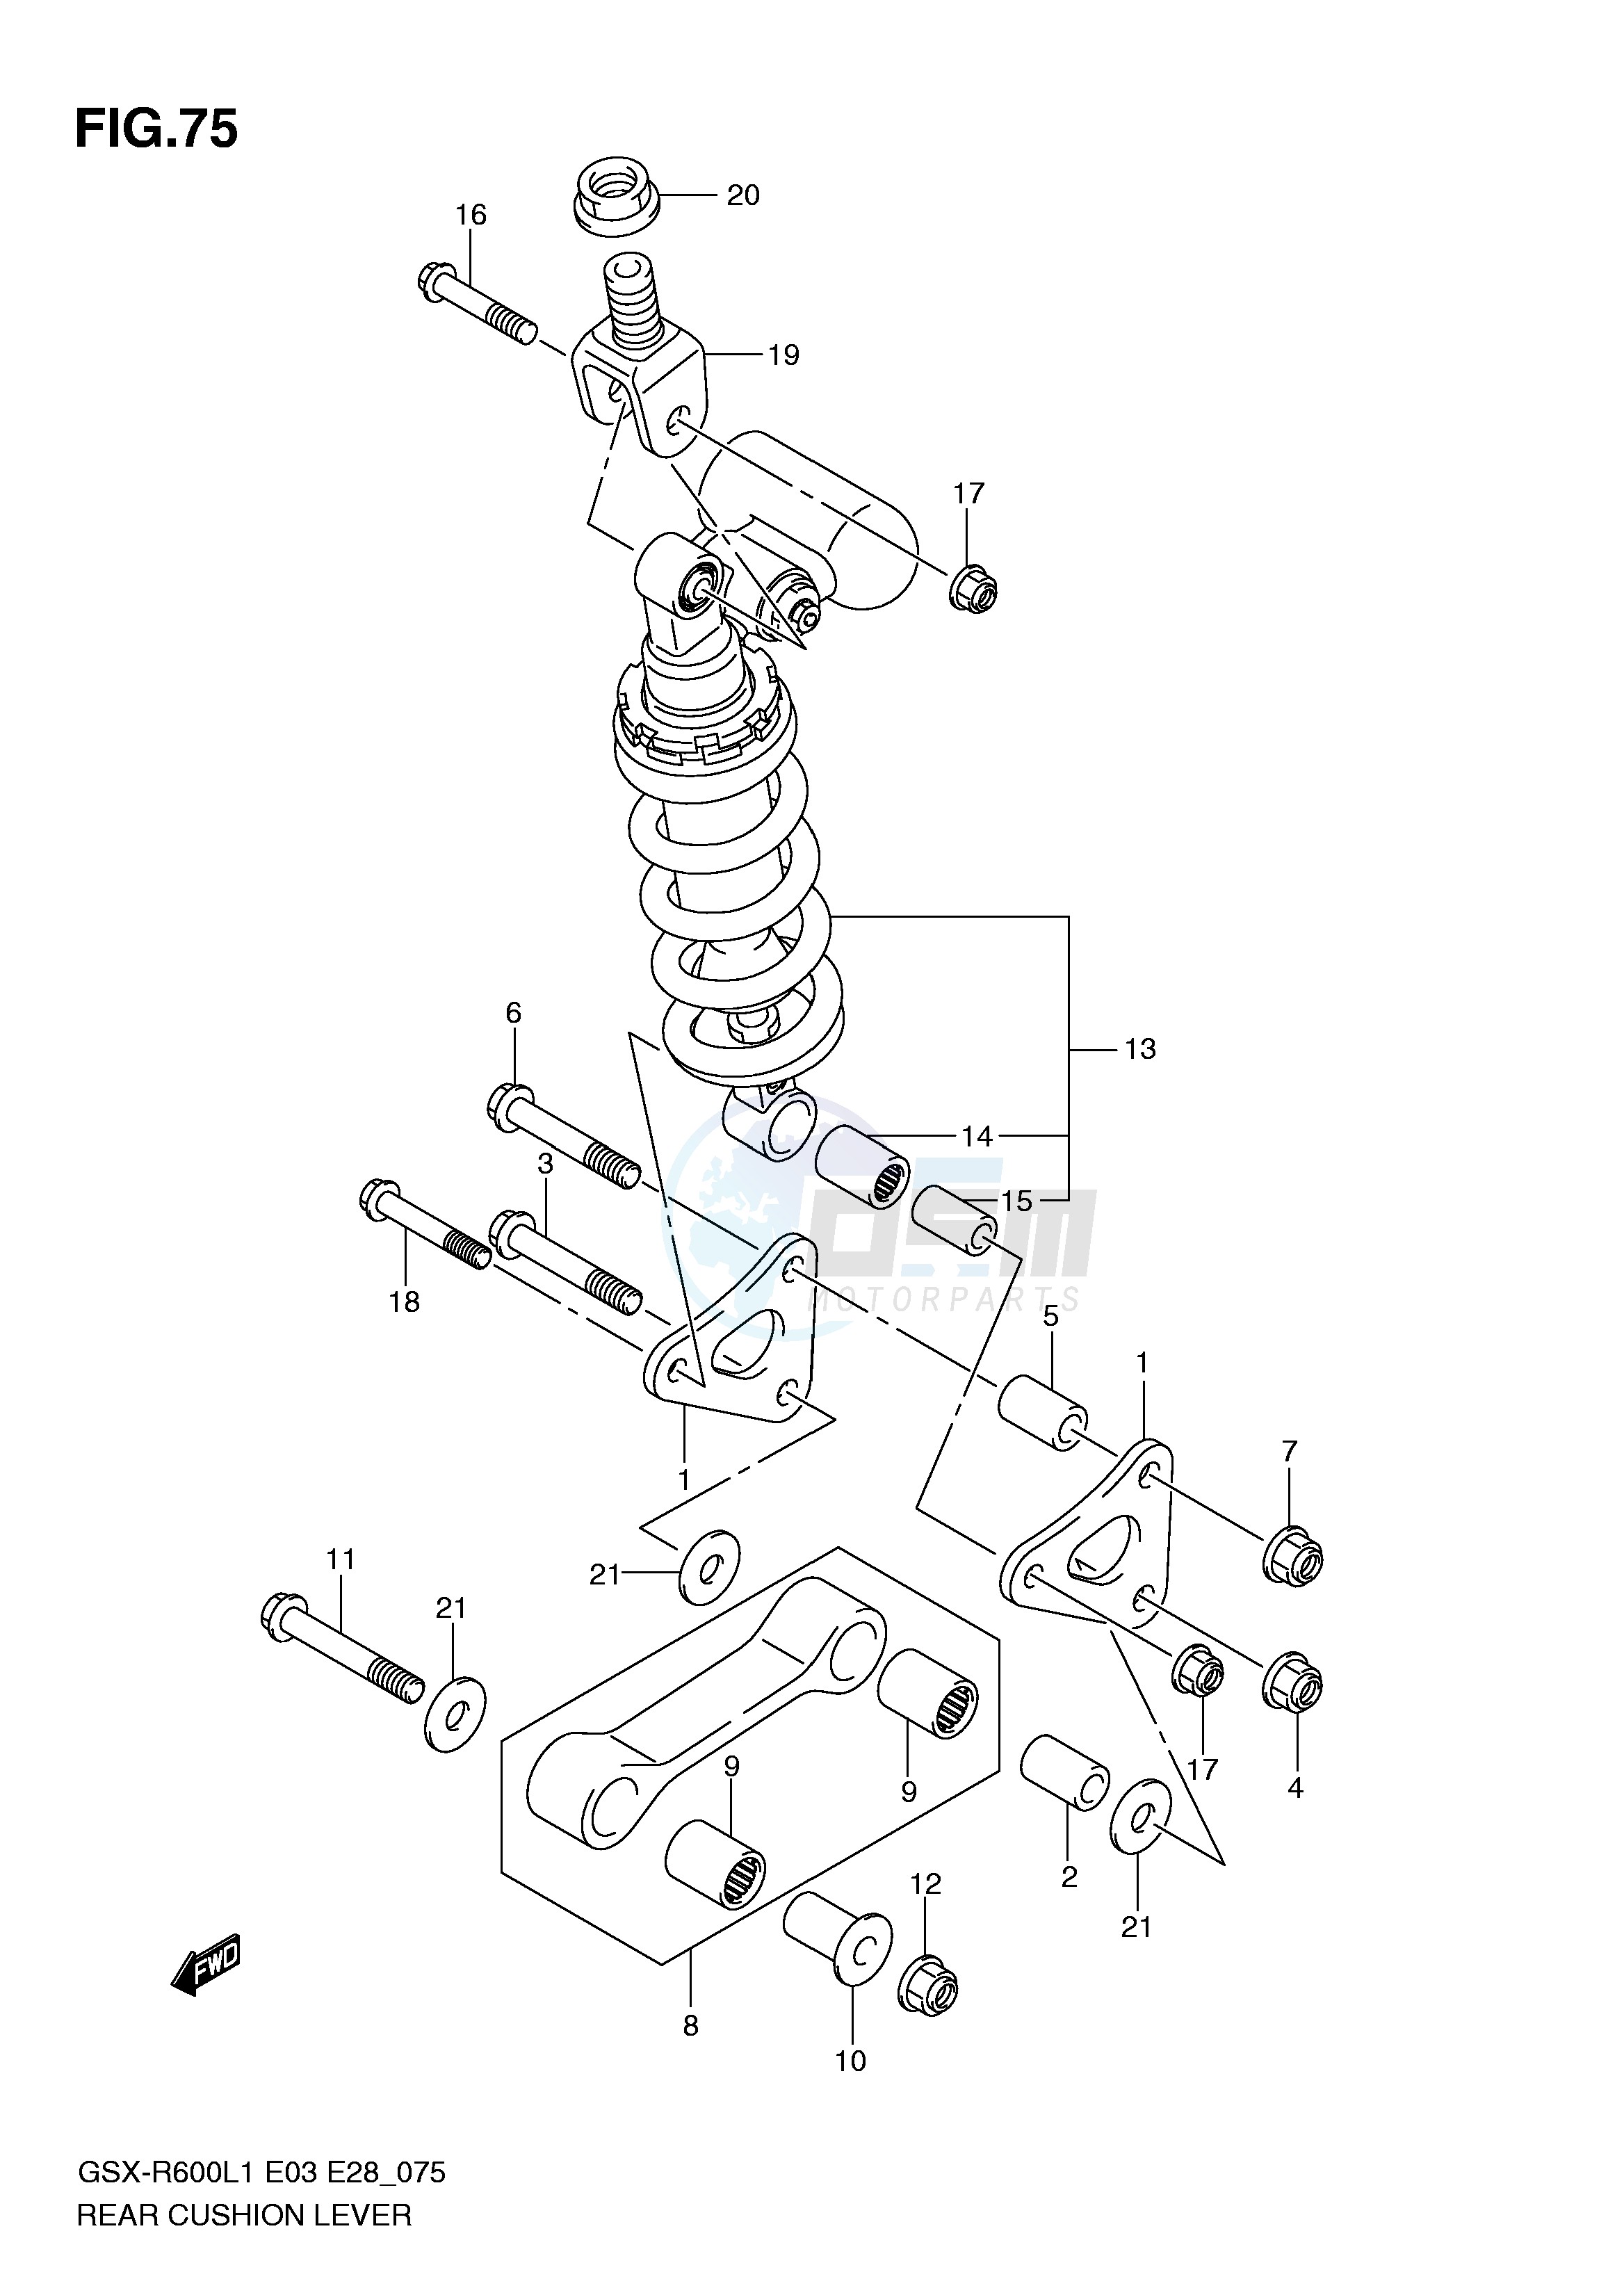 REAR CUSHION LEVER (GSX-R600L1 E28) blueprint